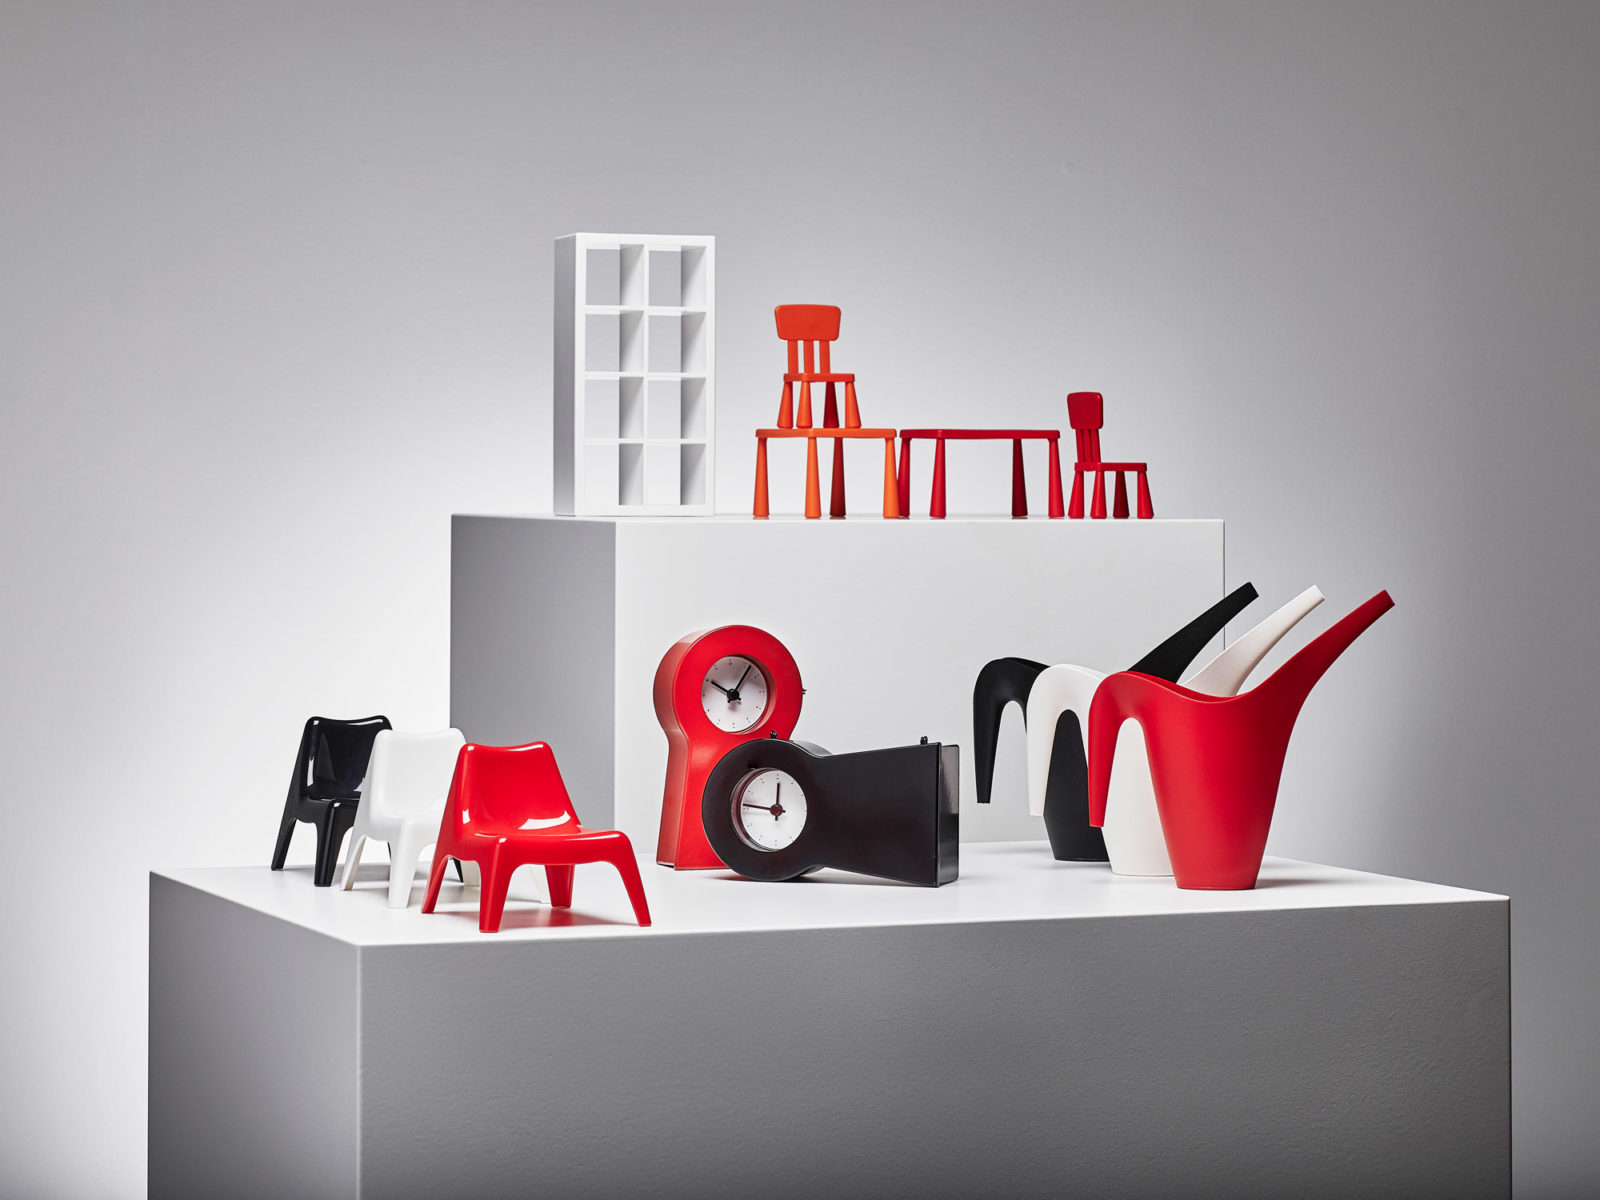 Miniaturmöbel und Dekorationsgegenstände, in Rot und Schwarz, darunter eine Uhr, angeordnet auf zwei weißen Würfeln.